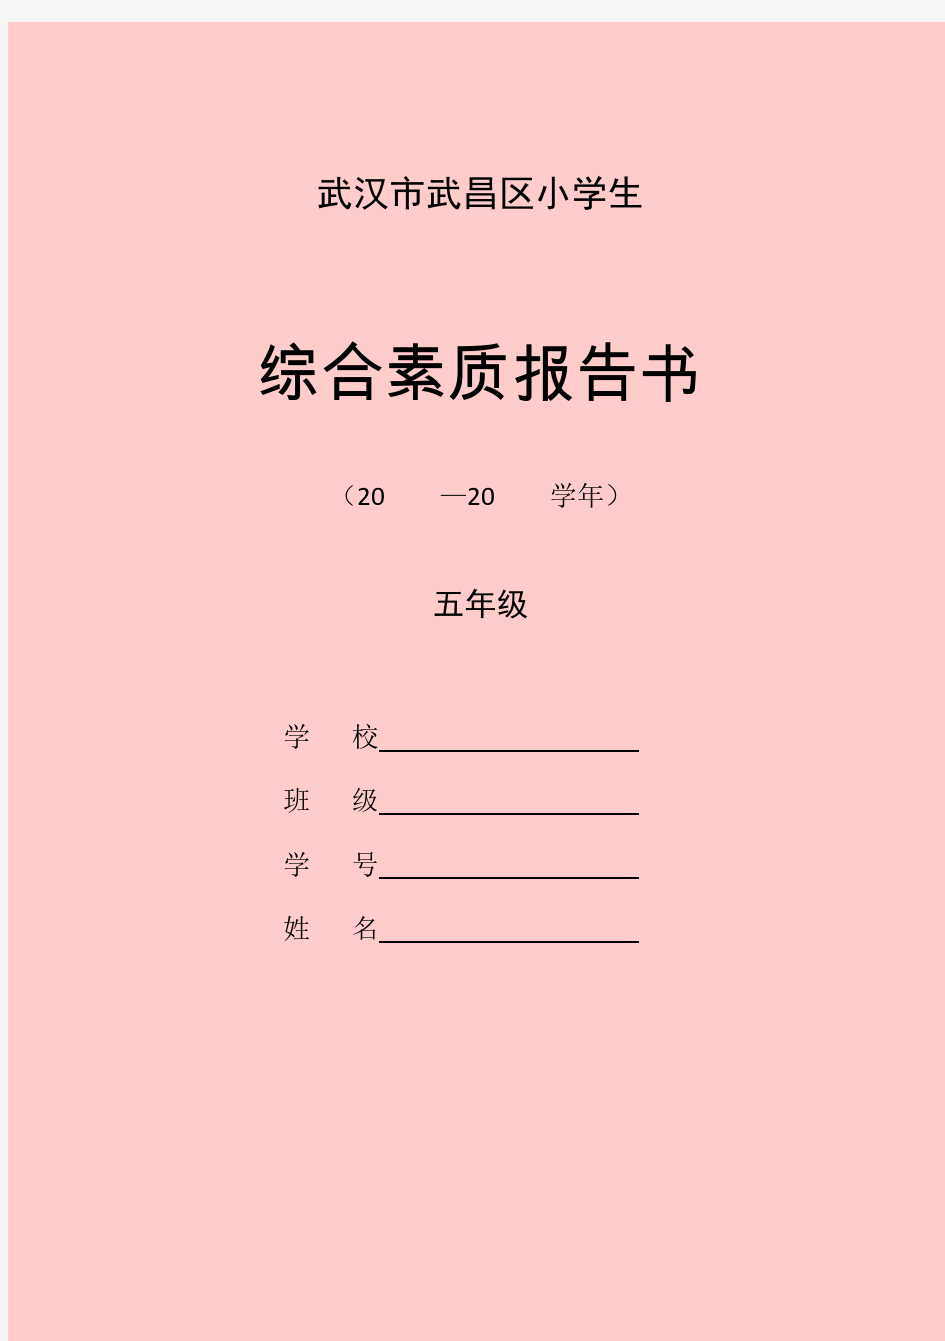 武汉市武昌区小学生综合素质报告书1223-5年级